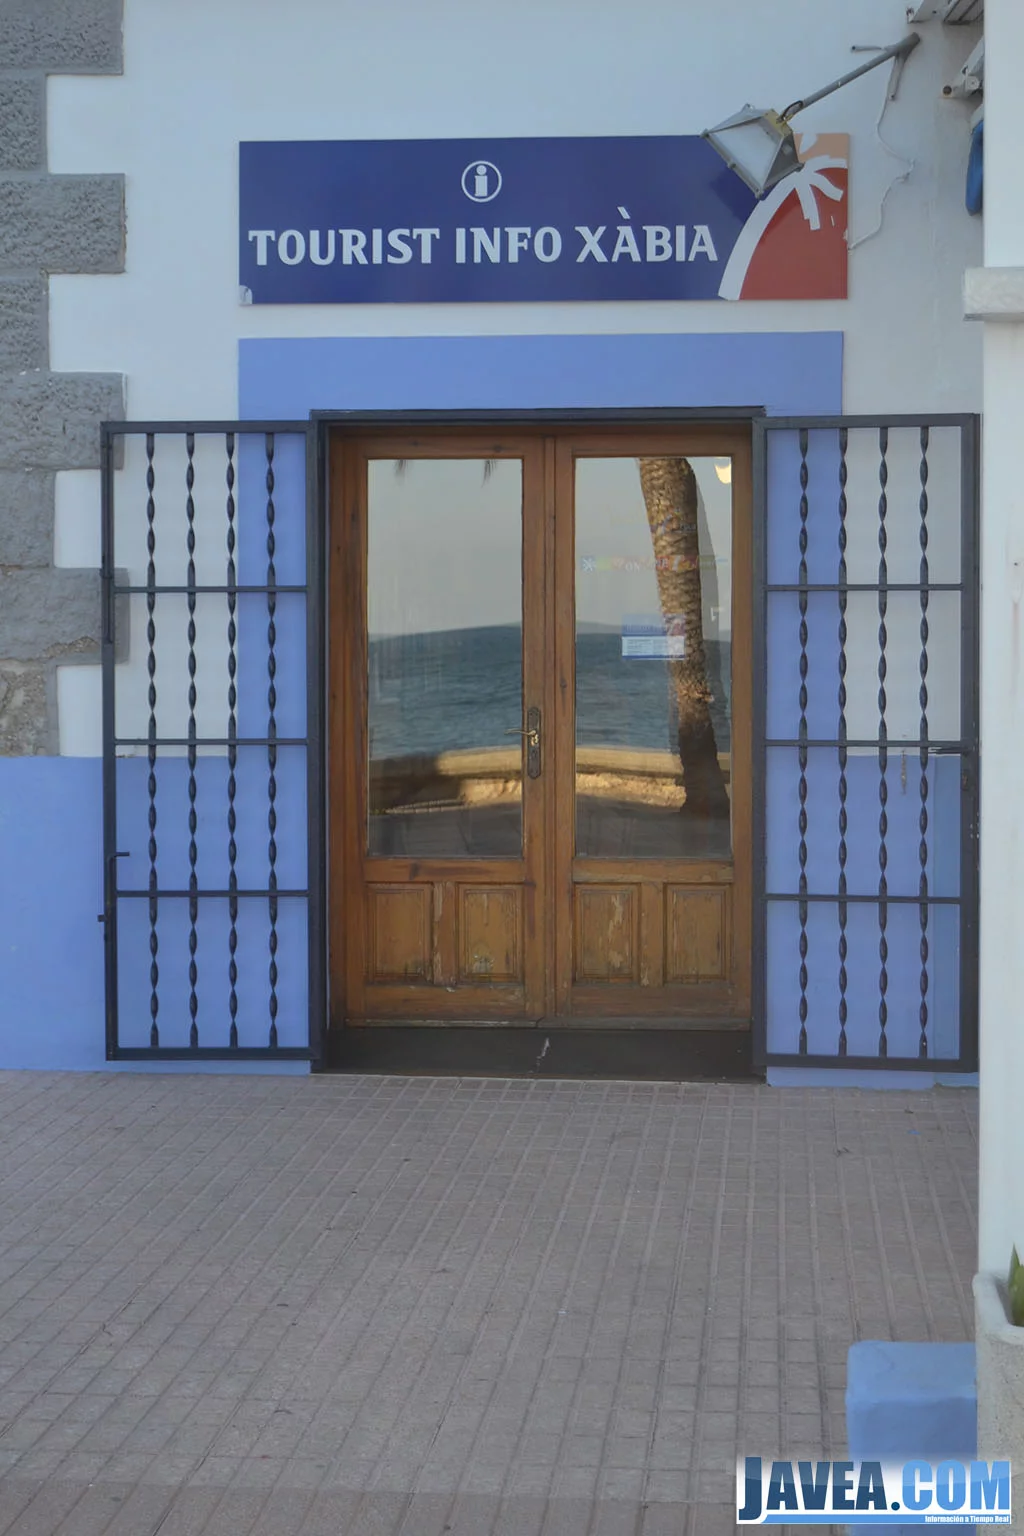 La oficina de turismo del puerto de Jávea se encuentra en el Paseo Marítimo a primera línea de la Playa de la Grava